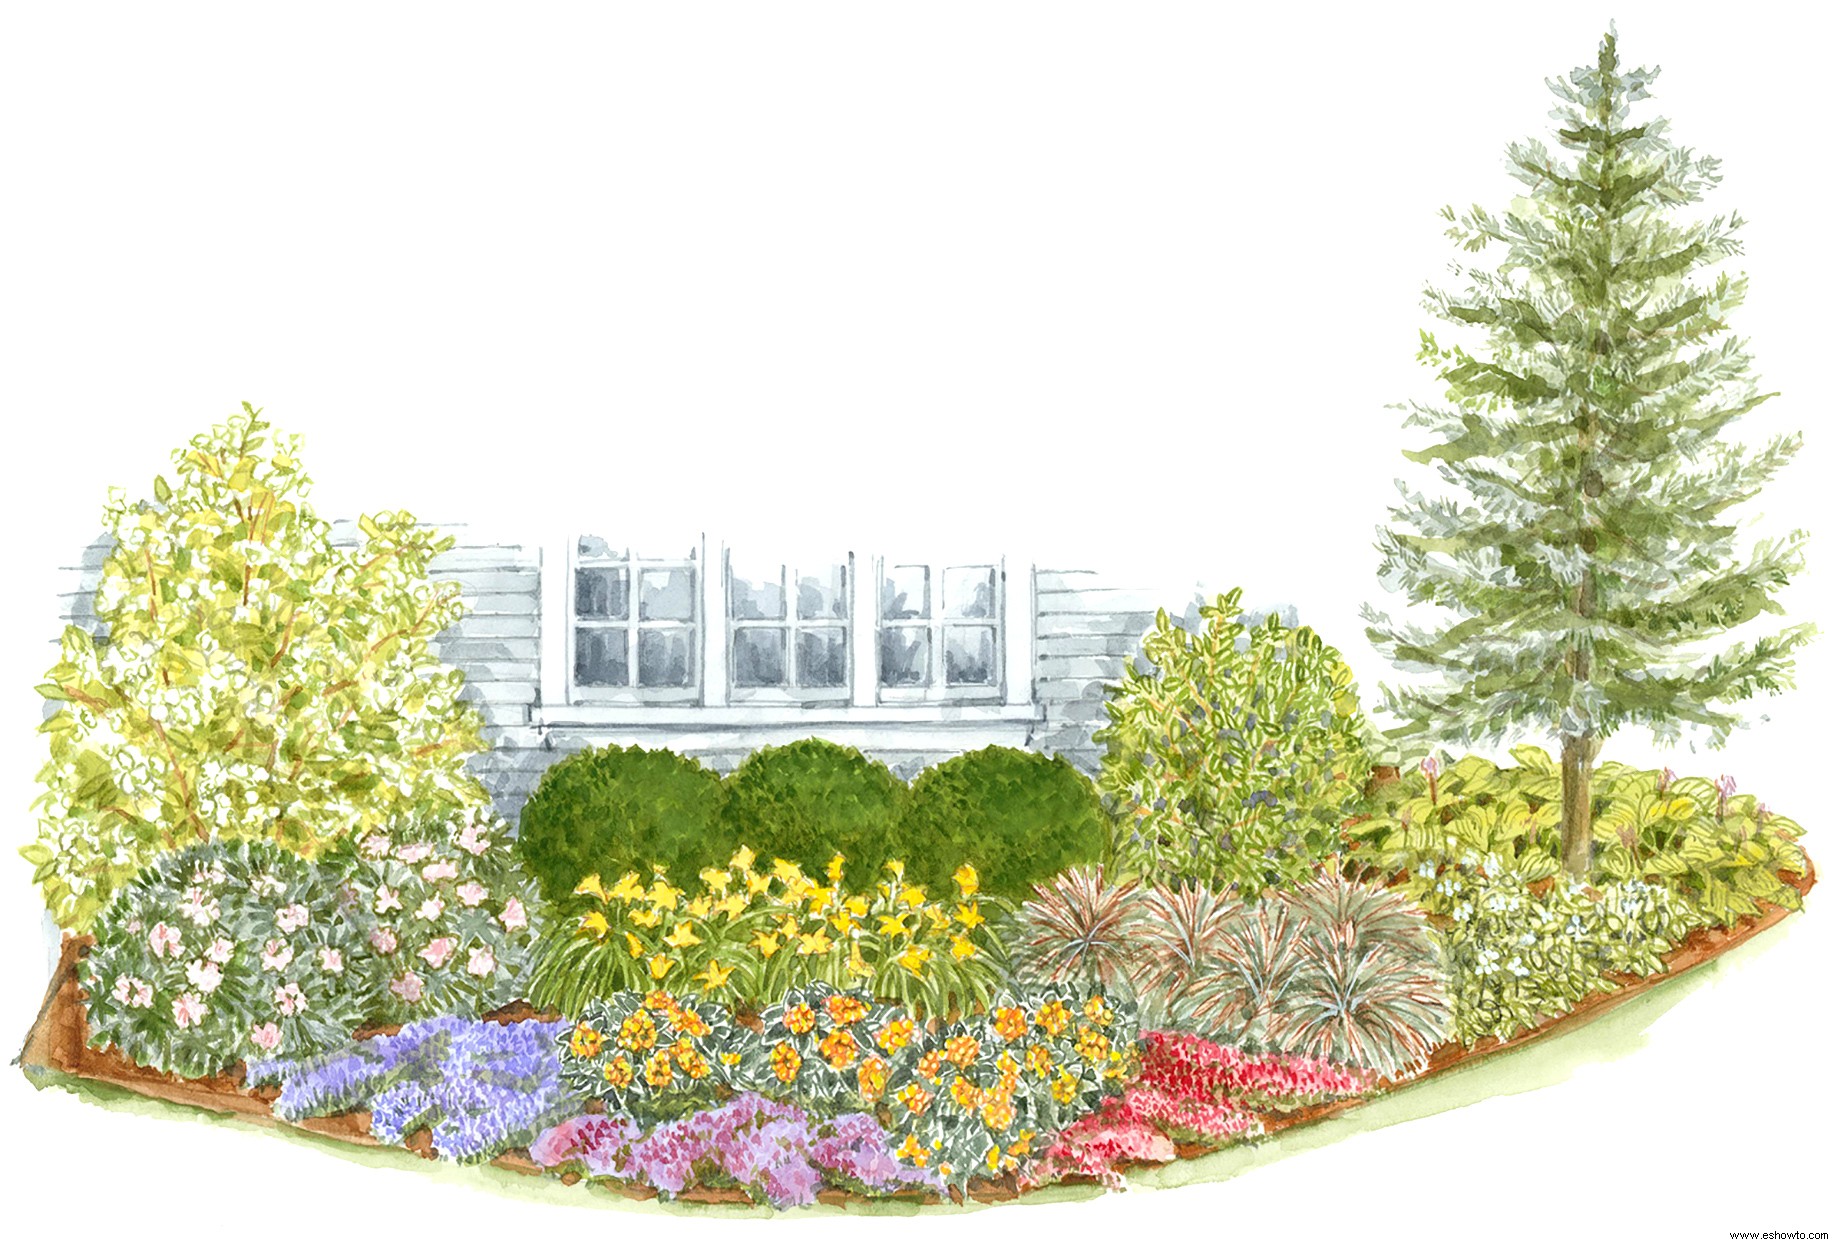 Aumente el atractivo exterior de sus jardines delanteros con este plan de jardín básico 